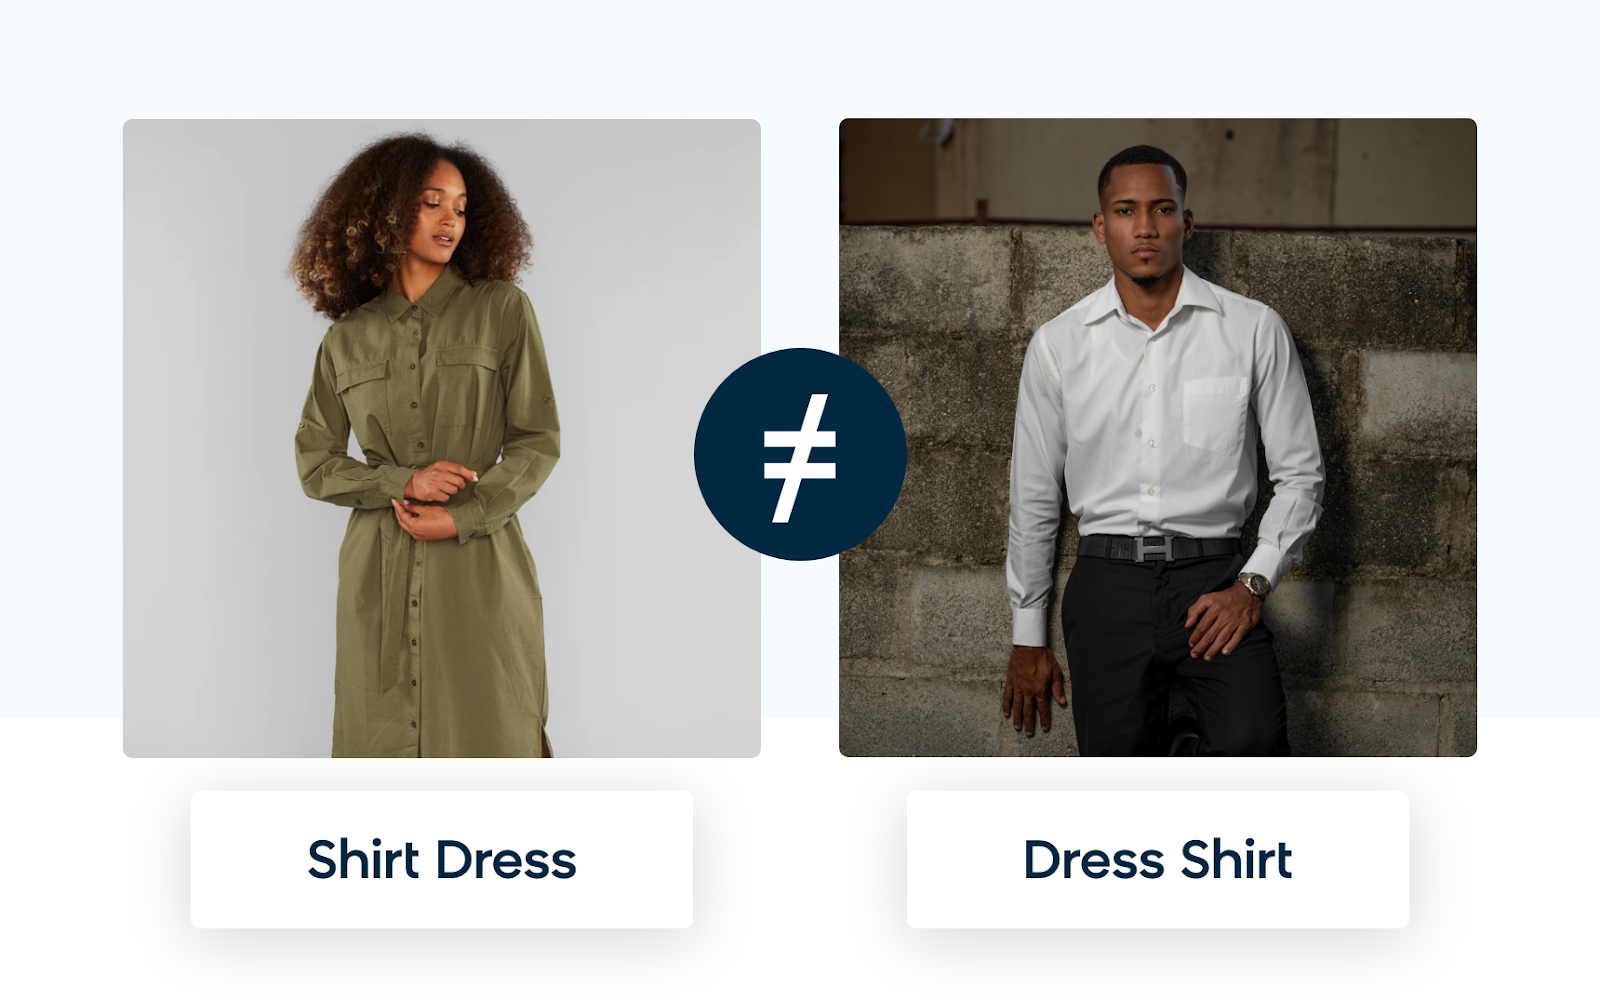 Semantic Understanding Showing Difference Between Shirt Dress and Dress Shirt